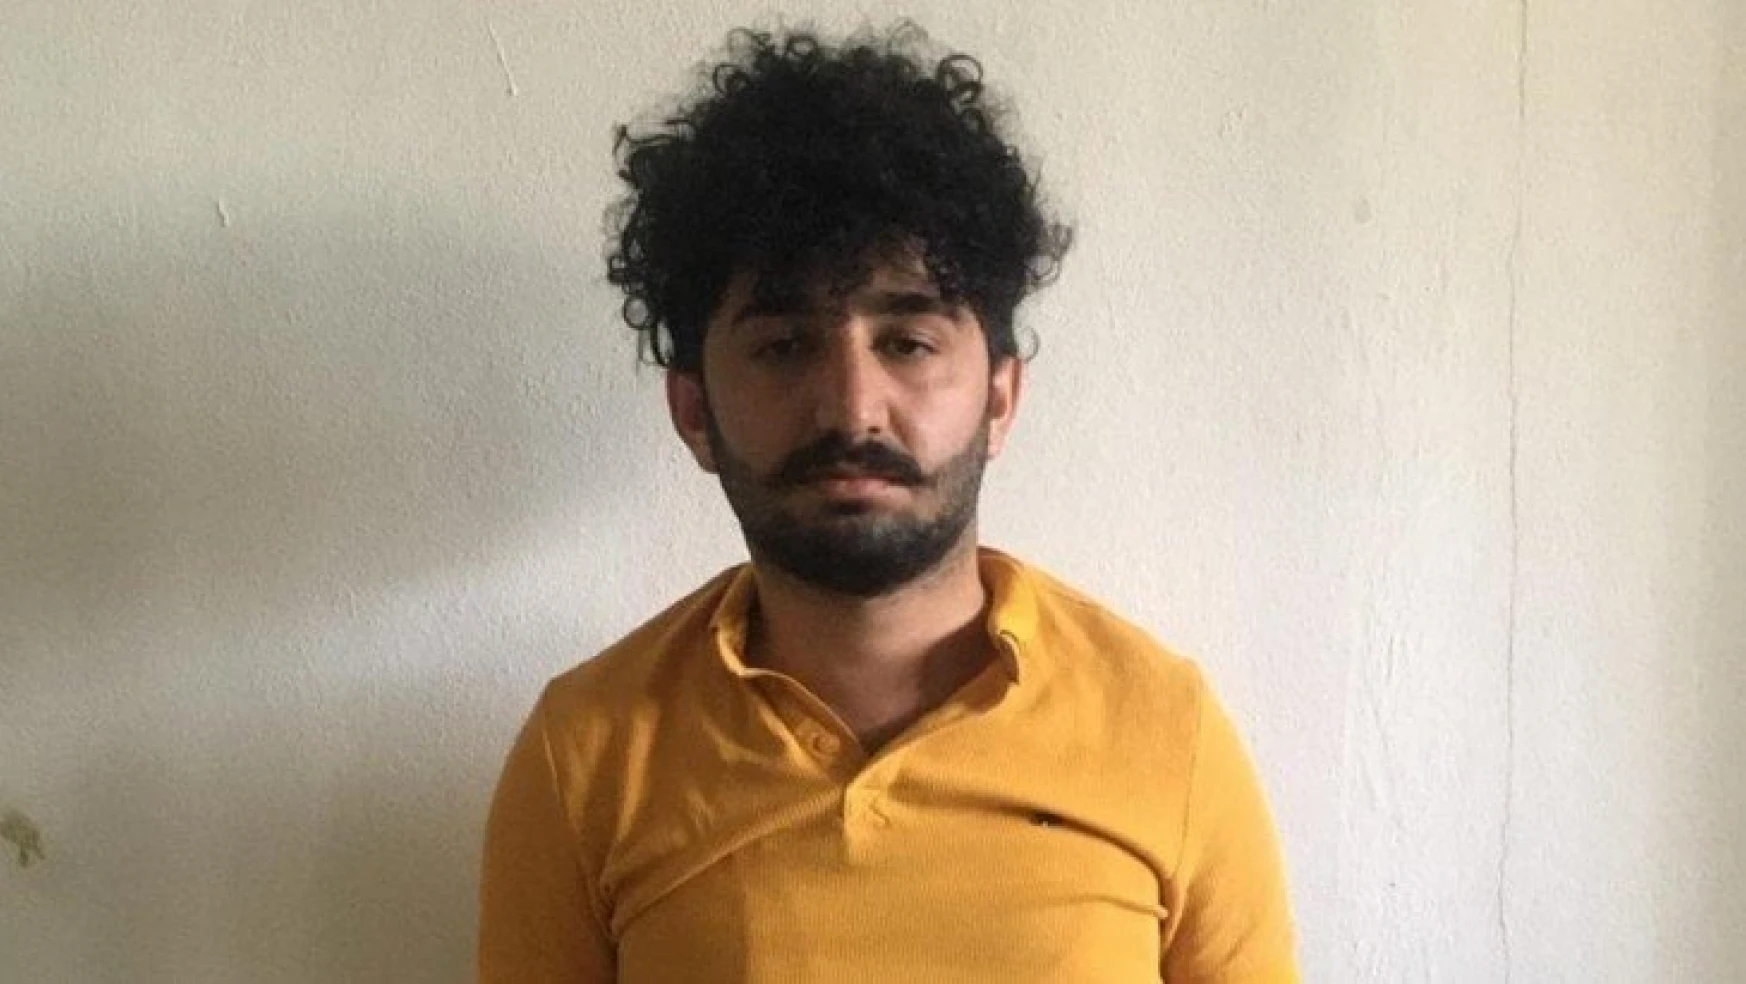 Ferman Kod Adlı Ercan Yacan Adlı Terörist, Van'da Saklandığı İkamette Yakalandı